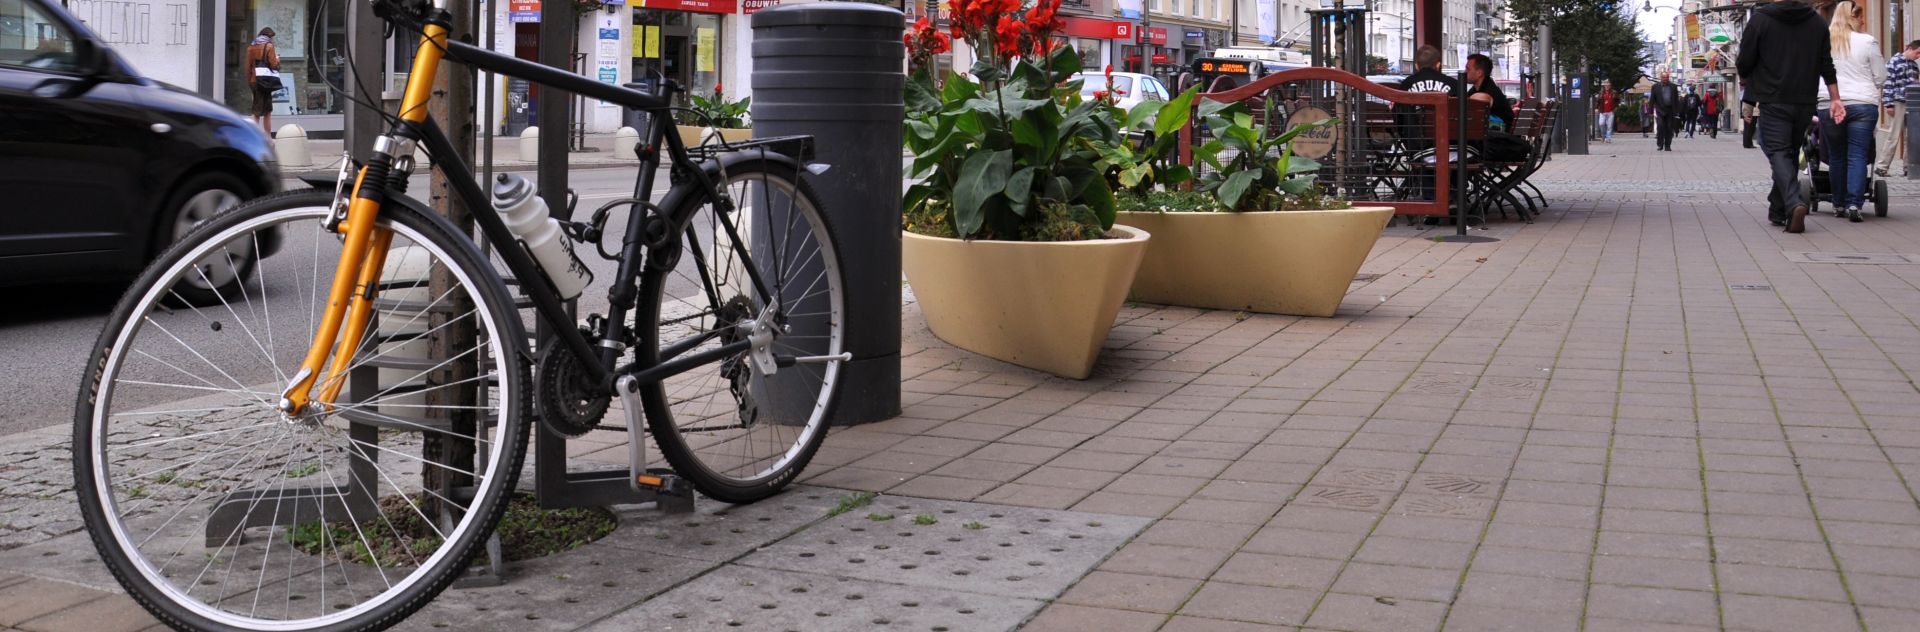 Rower na ulicy Gdyni 